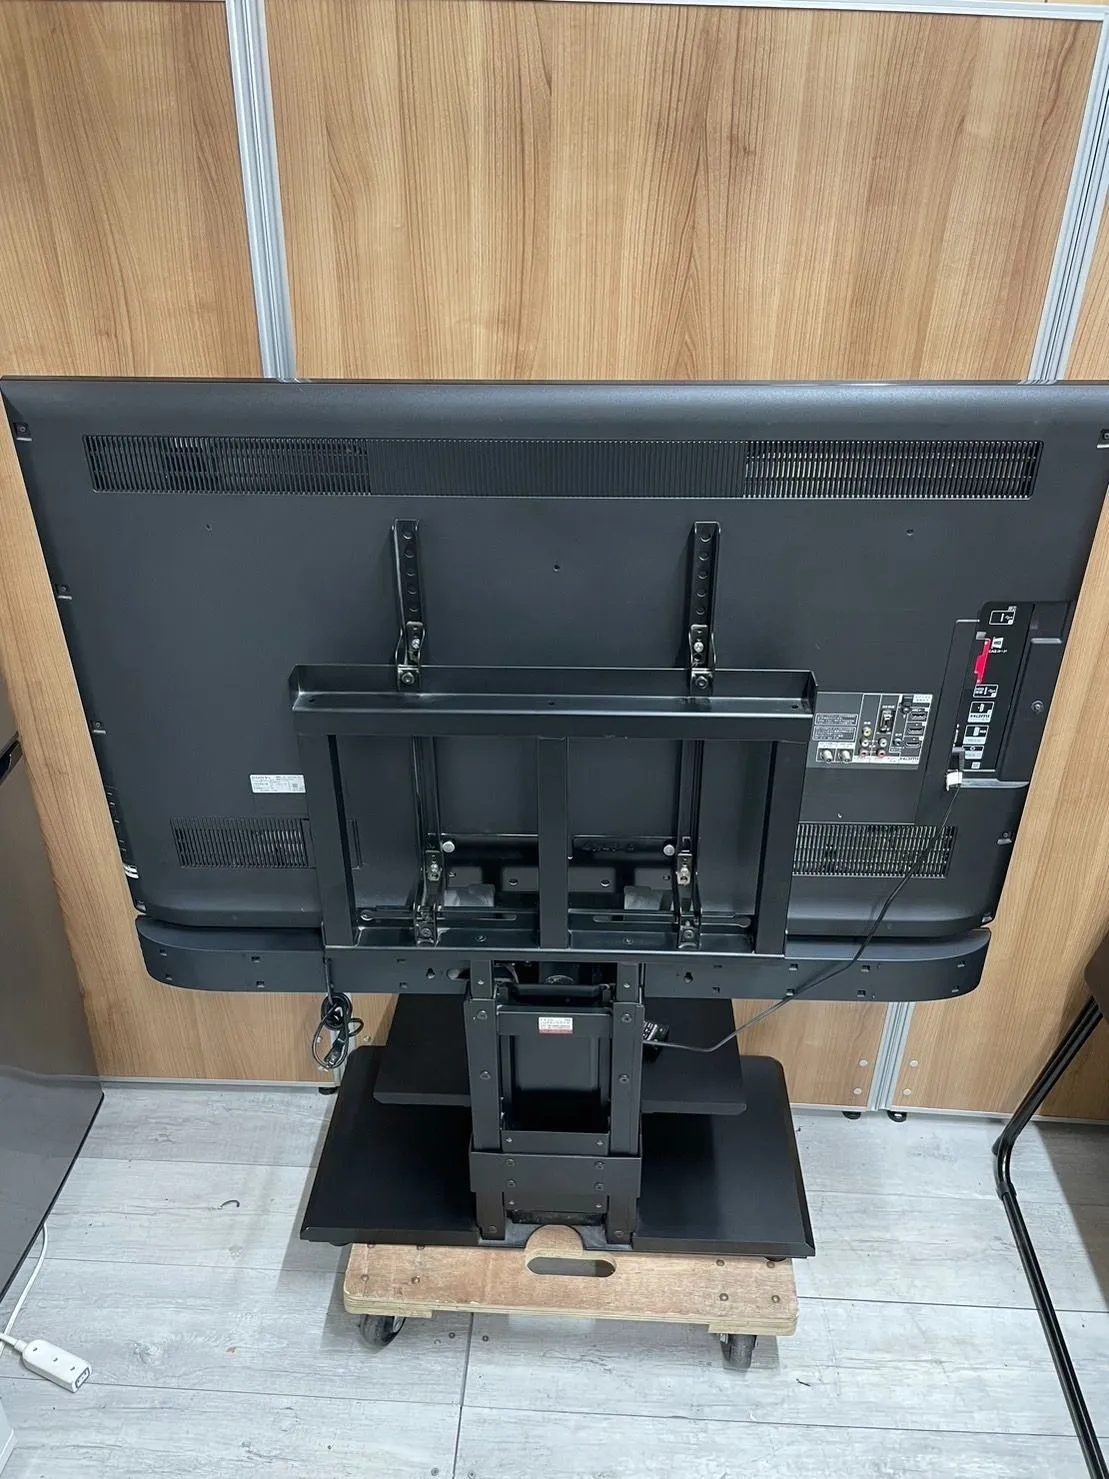 液晶テレビ ソニー SONY KDL-46EX72S BRAVIA(ブラビア) 46V型 3D対応 TVスタンド&サウンドバー付き